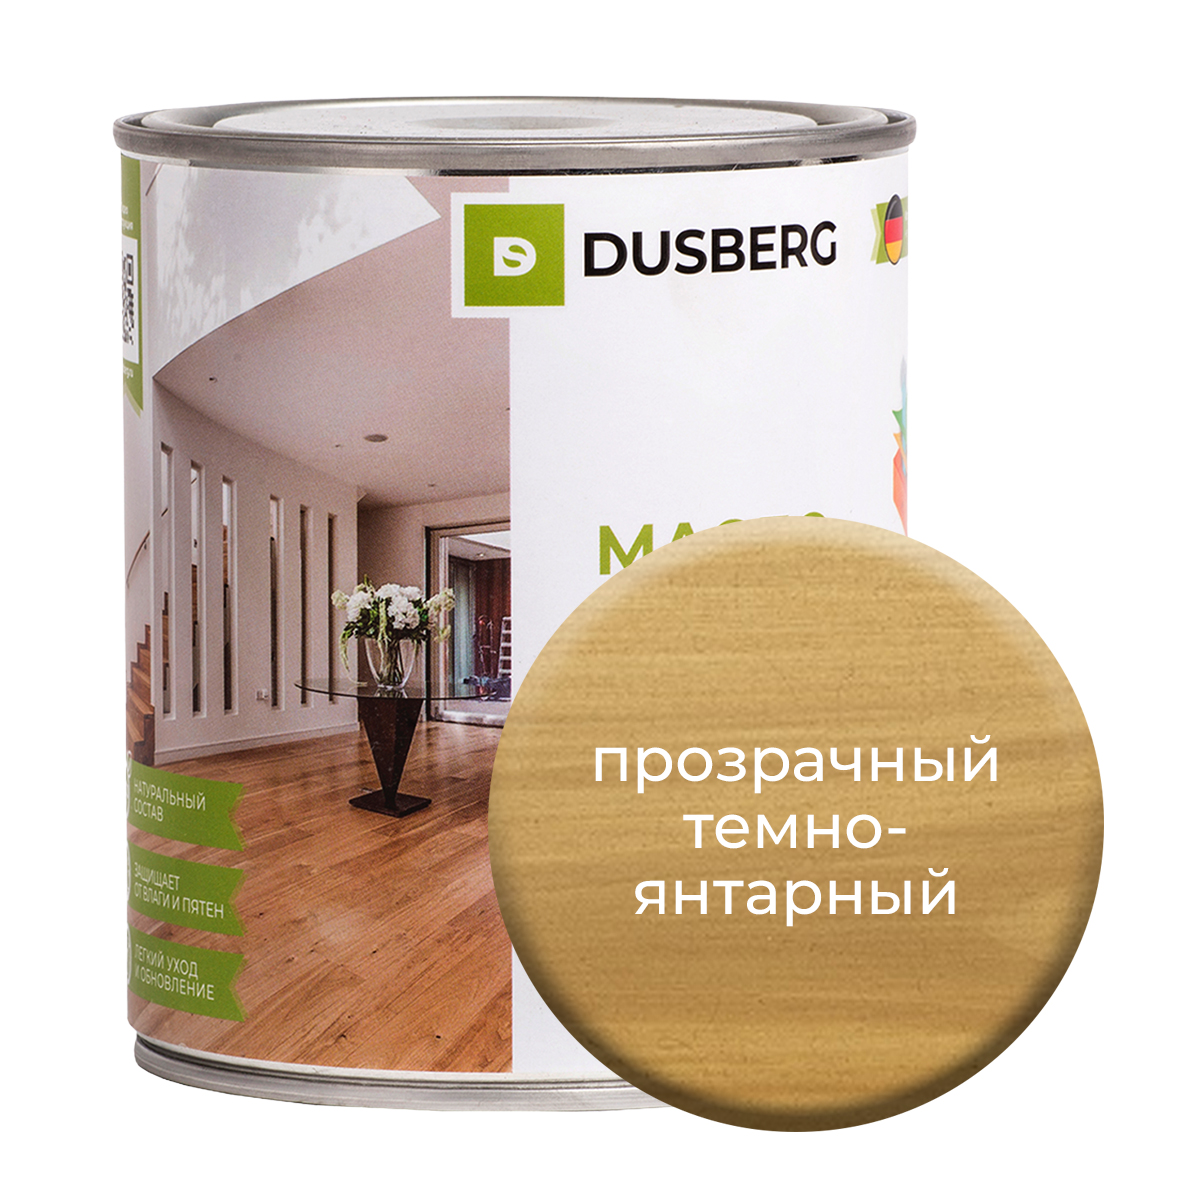 Масло Dusberg с твердым воском на бесцветной основе, 750 мл Прозрачный темно-янтарный